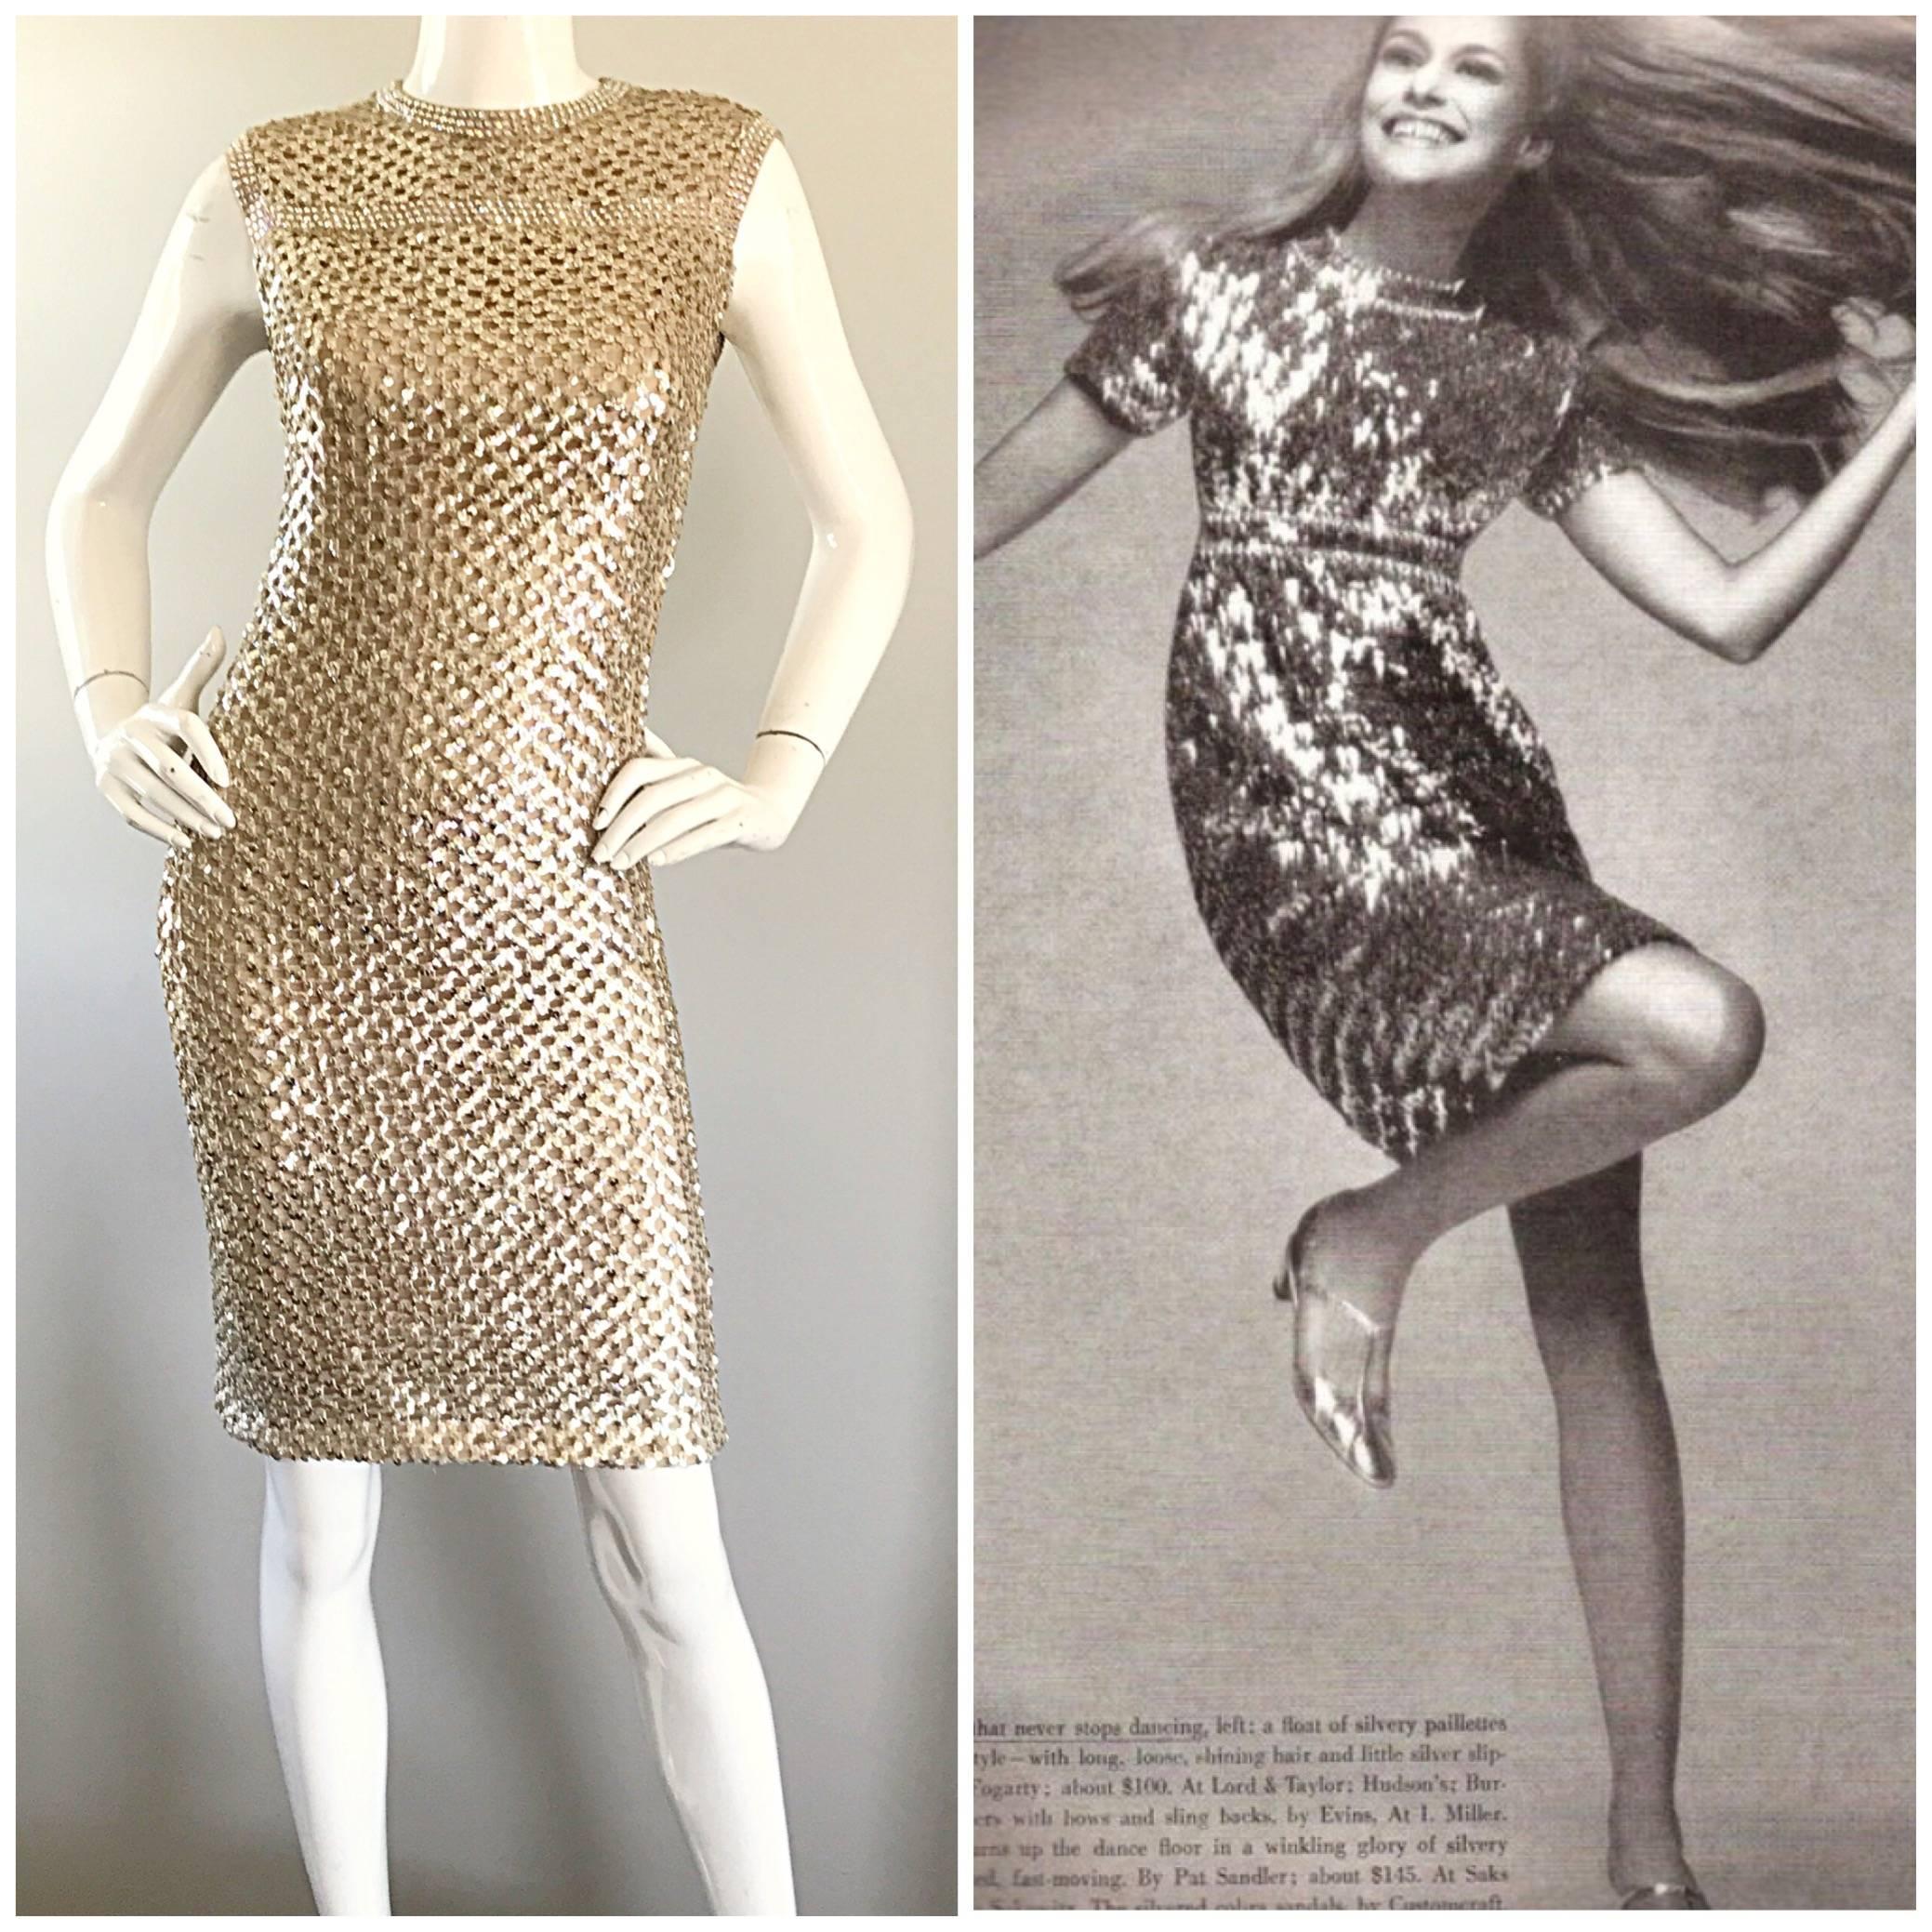 Schönes dokumentiertes PAT SANDLER 60er Jahre Kleid! Die kurzärmelige Version dieses Kleides wurde Mitte der 1960er Jahre an LAUREN HUTTON für die 